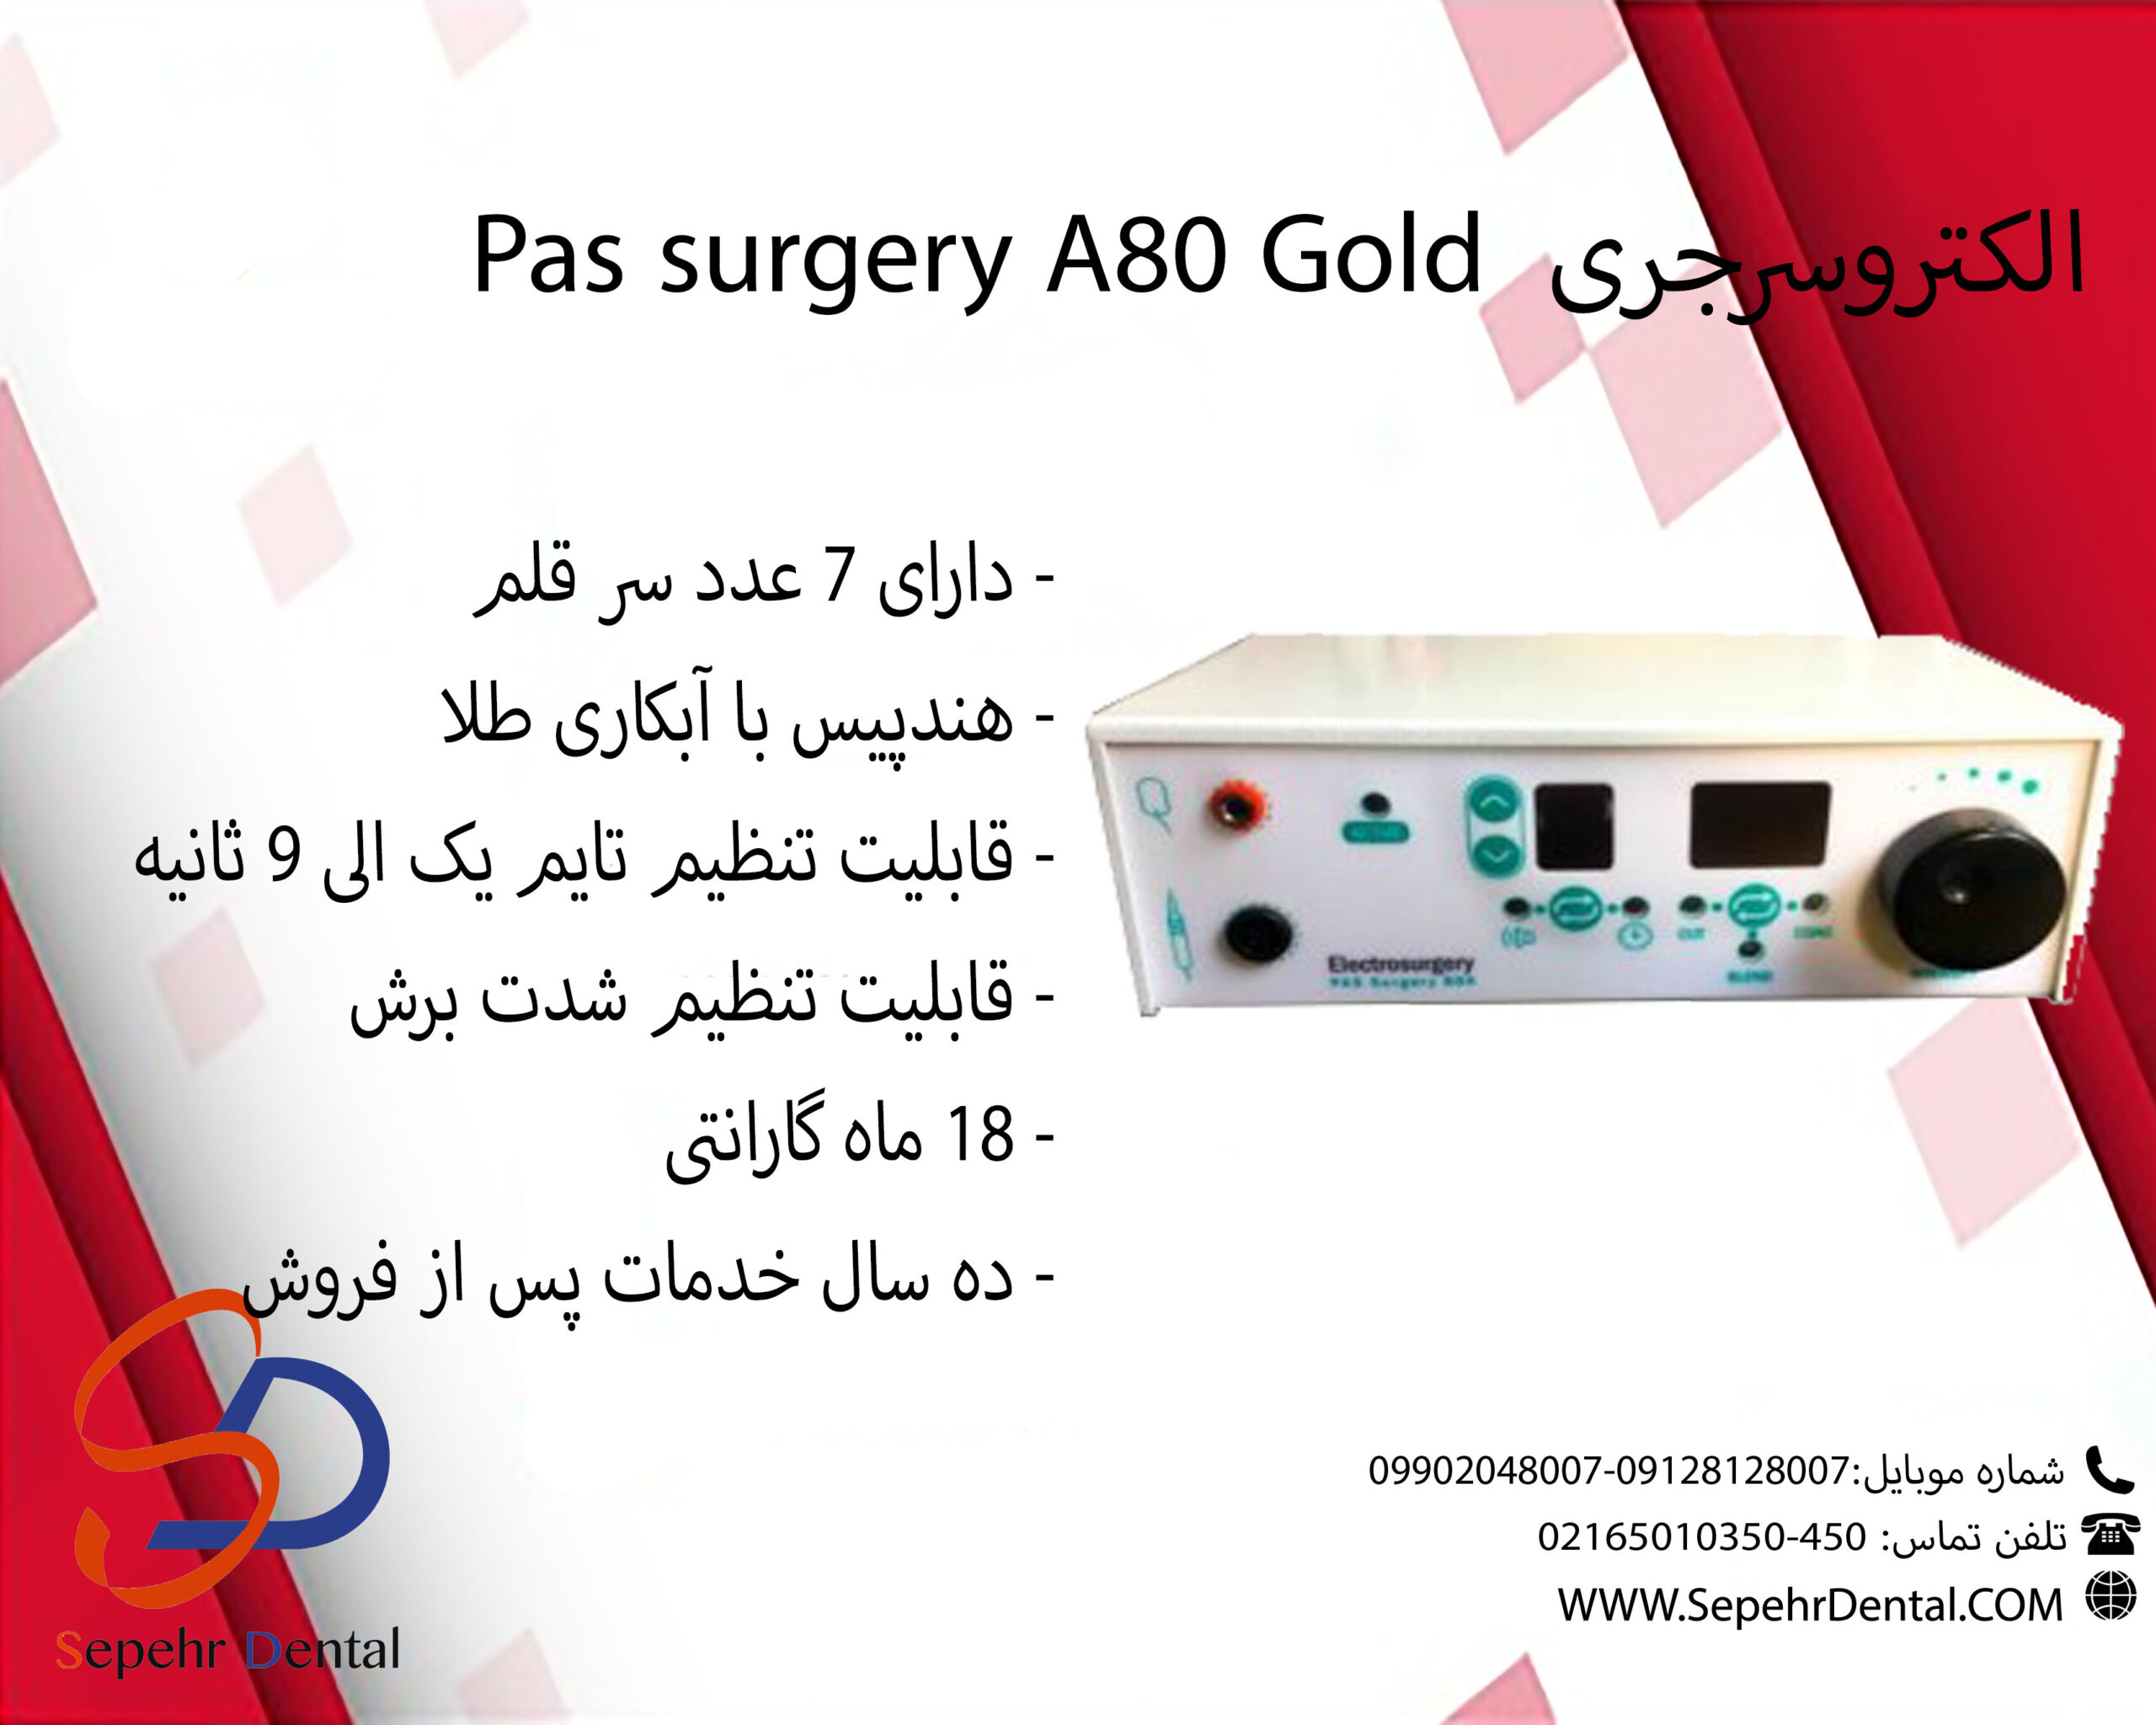 الکتروسرجری Pas surgery A80 Gold